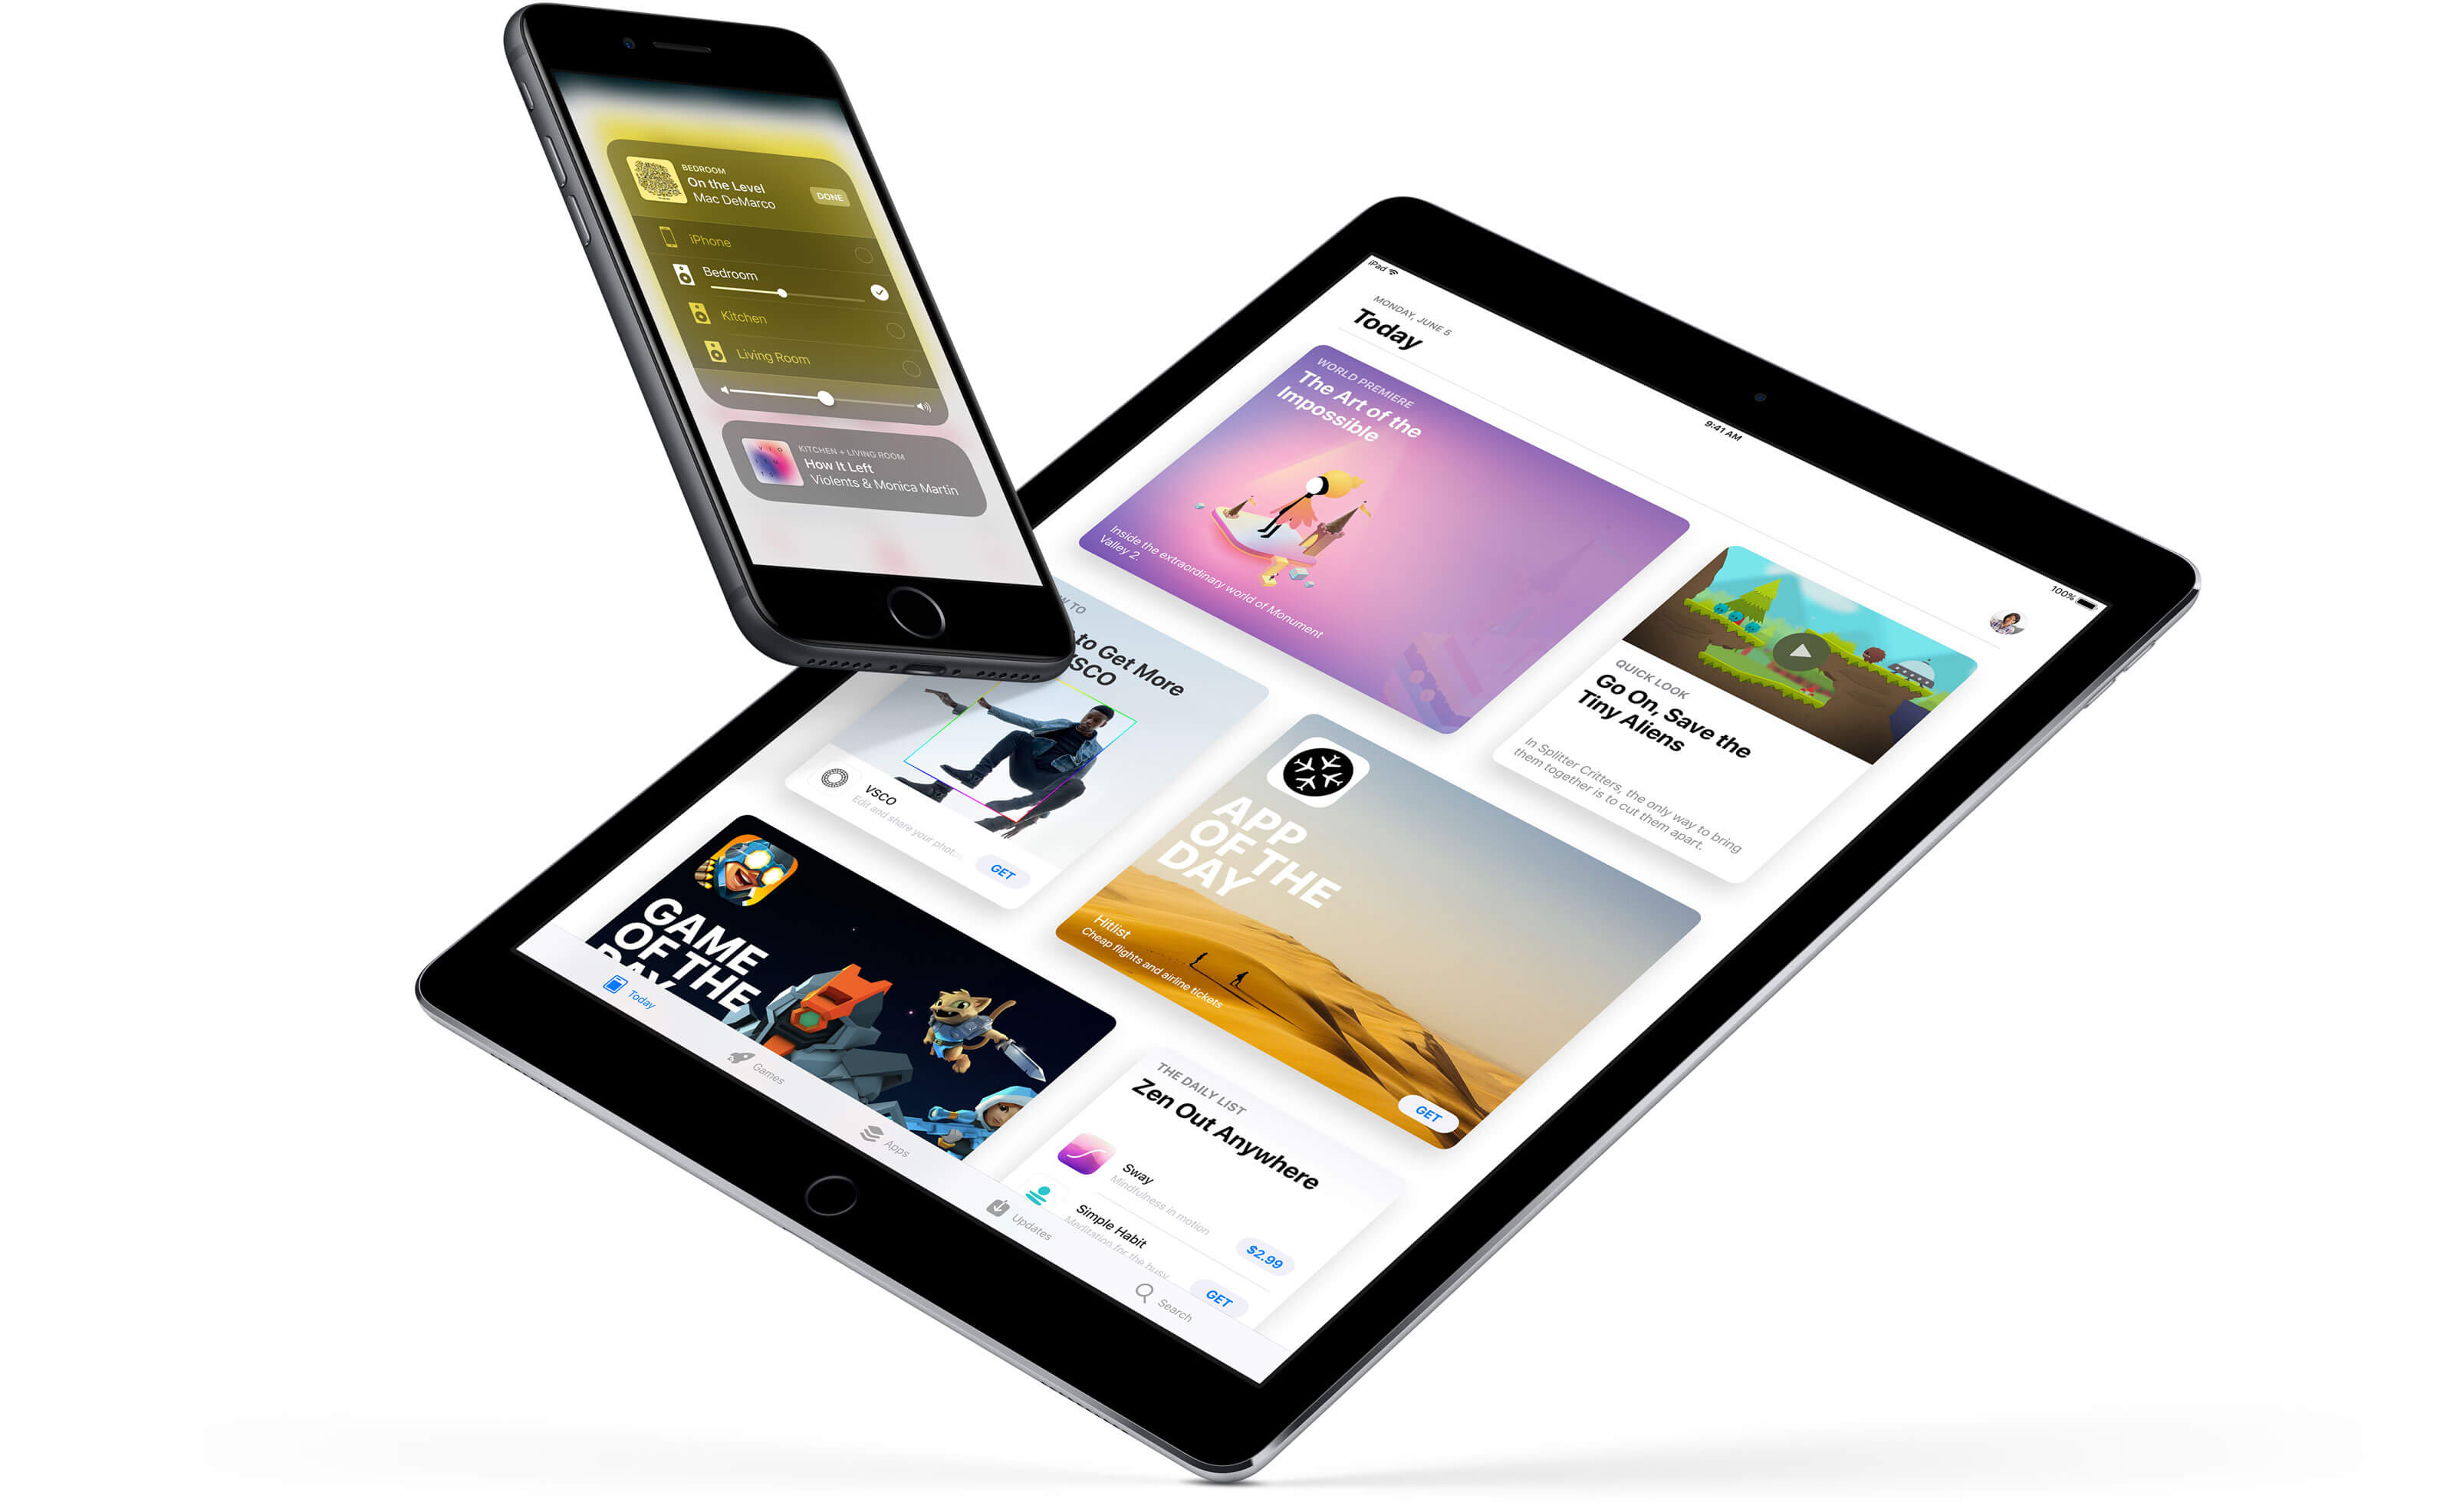 Apple iOS 11: главные нововведения первой бета-версии